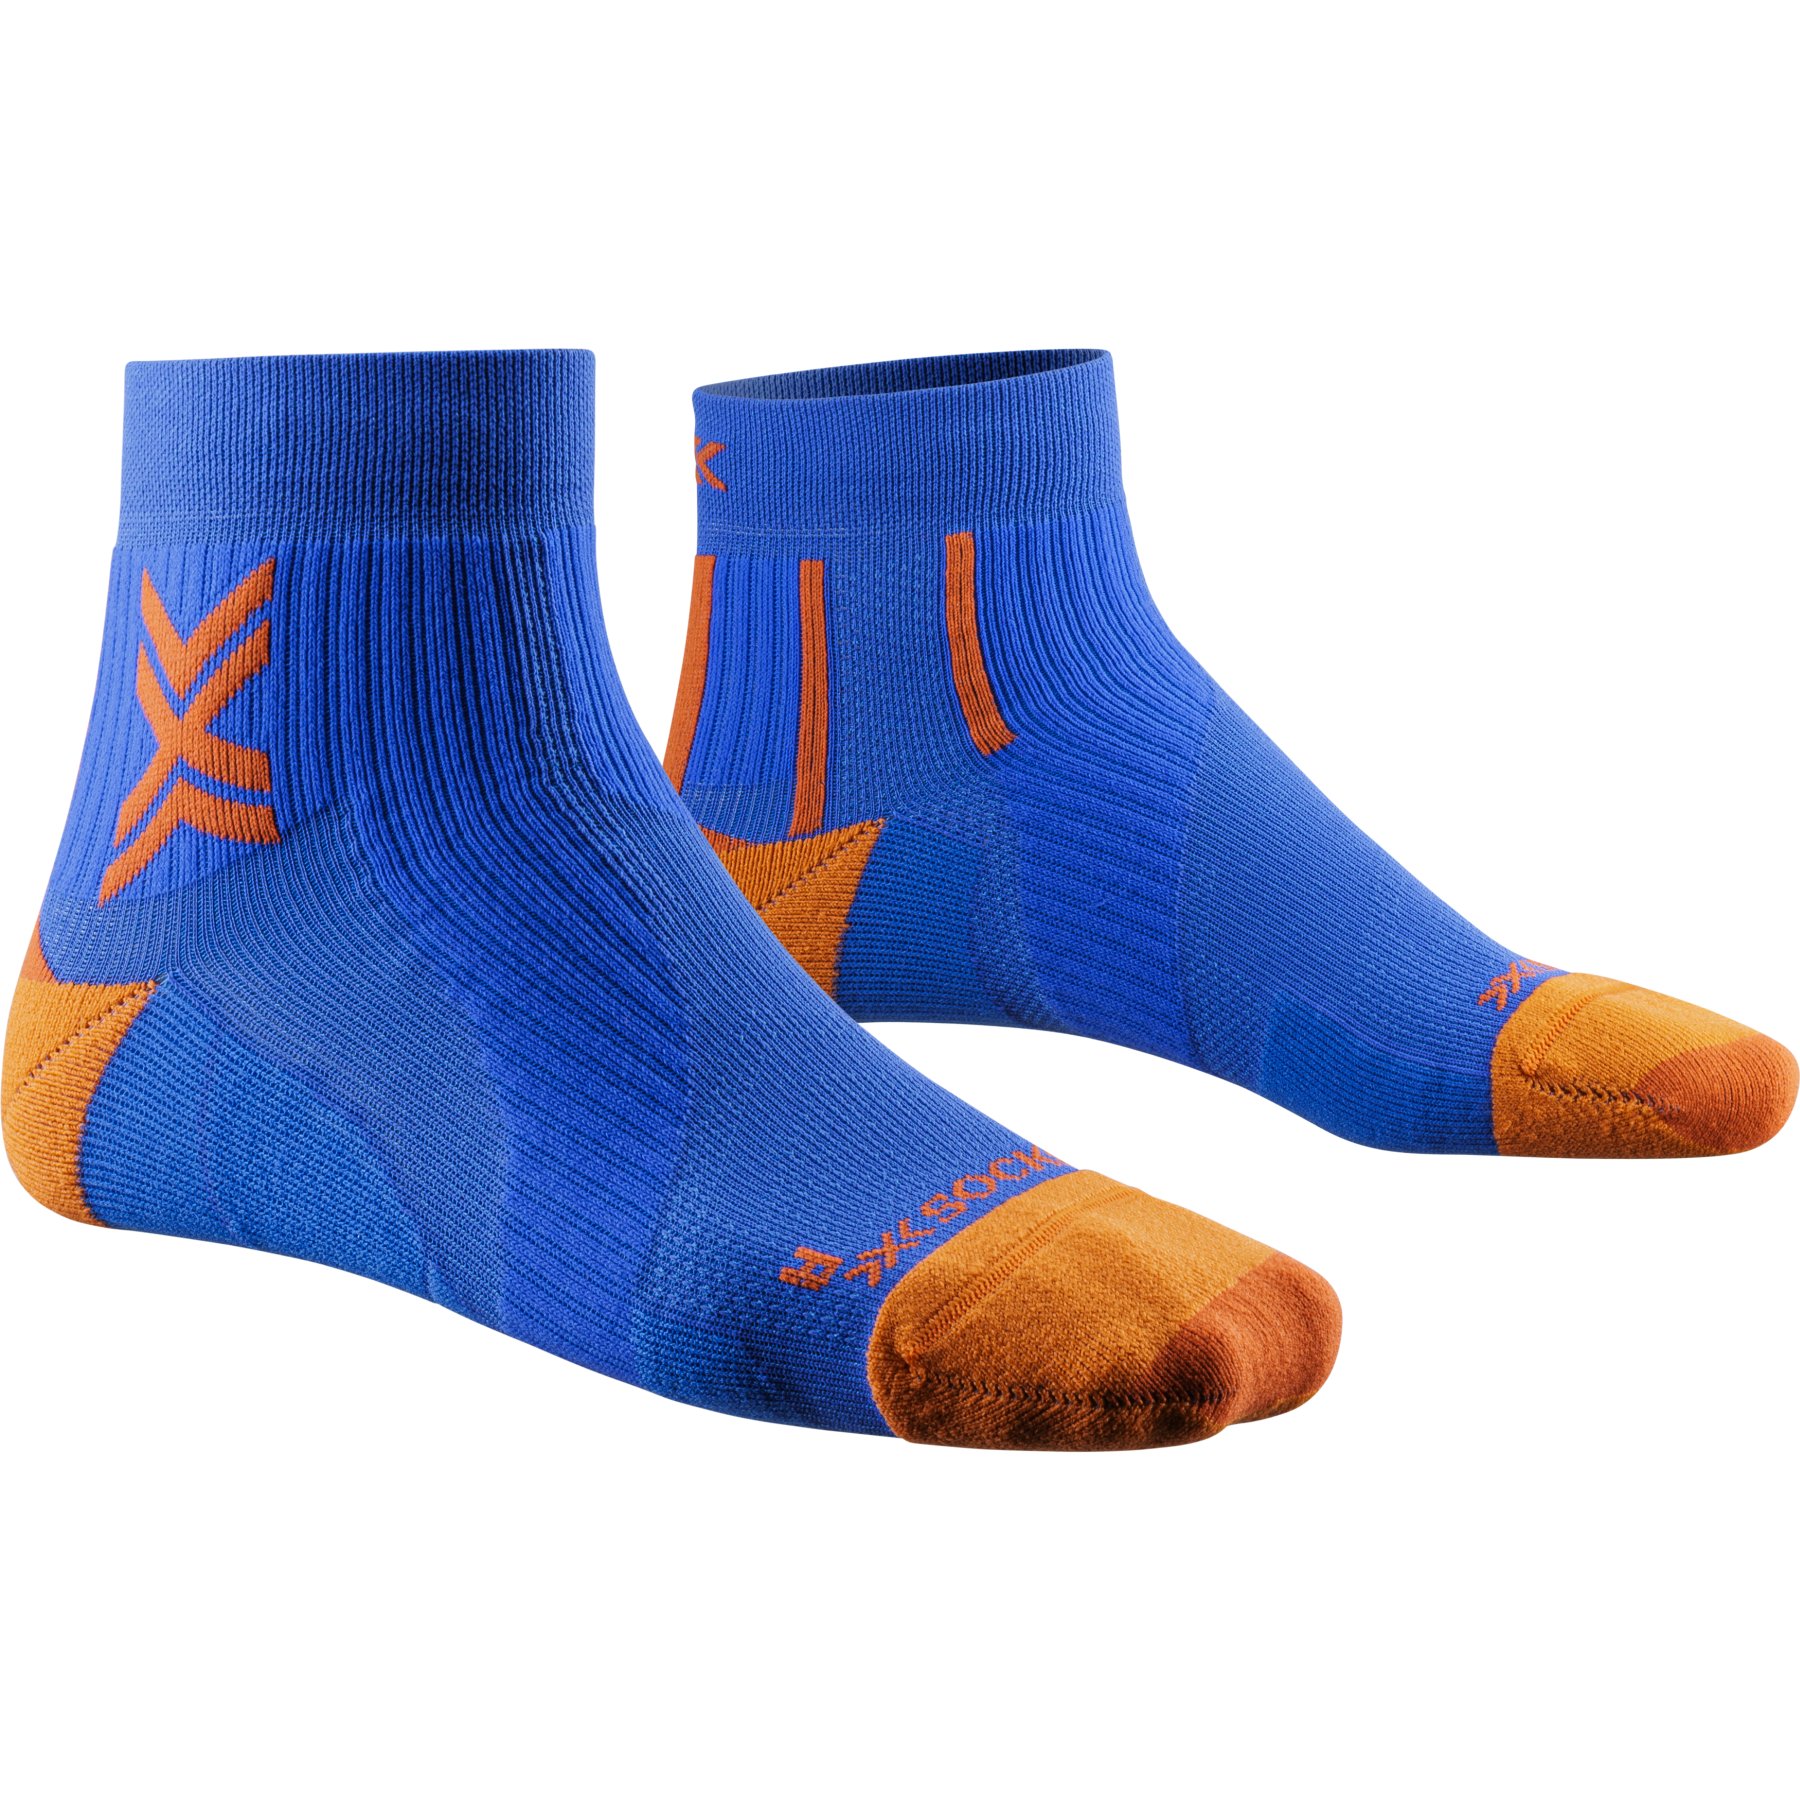 Produktbild von X-Socks Run Perform Ankle Socken - twyce blue/orange